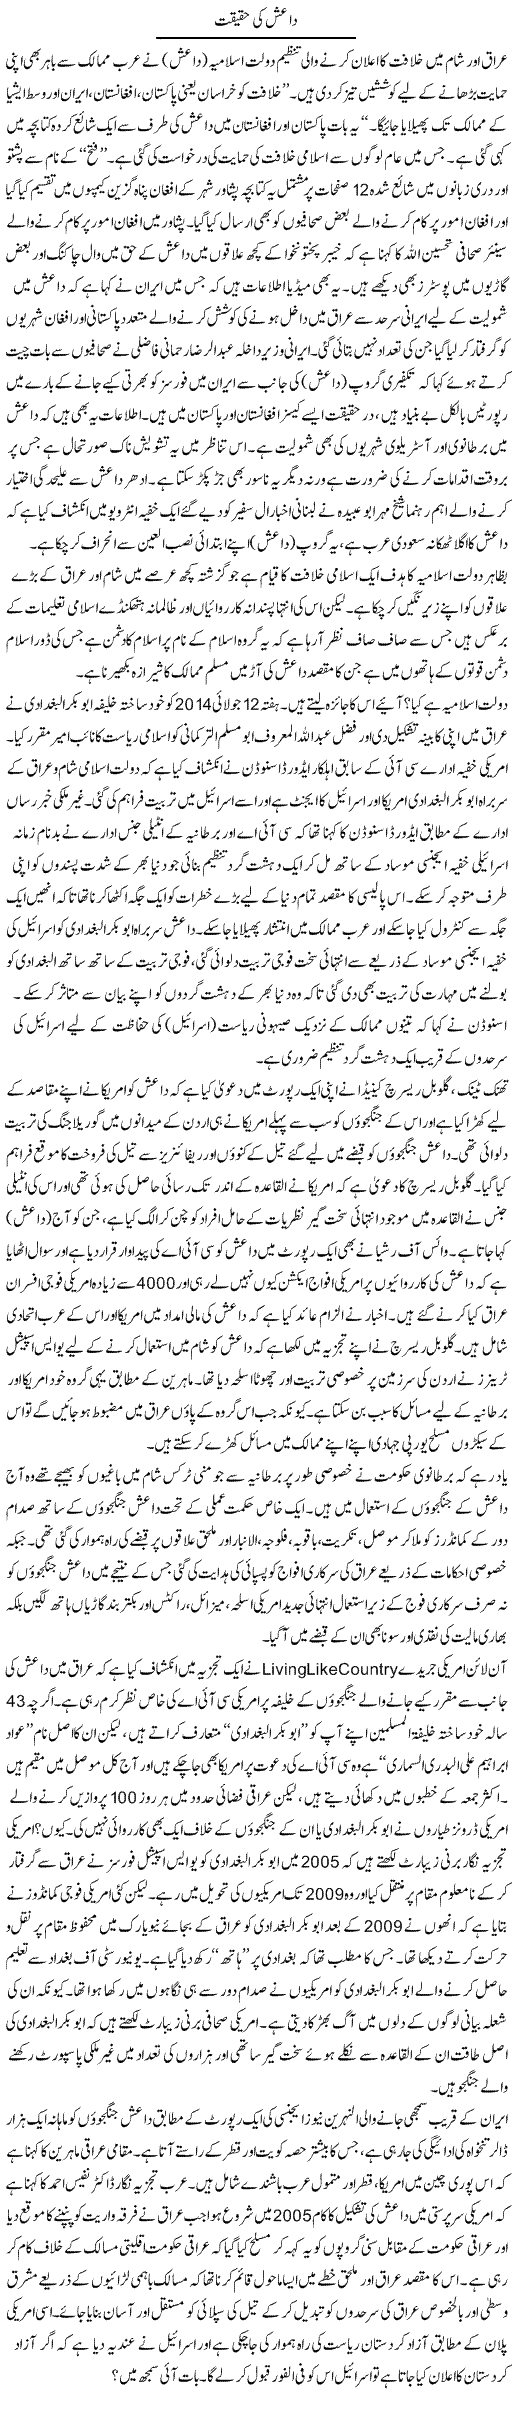 Daish Ki Haqeeqat | Shabbir Arman | Daily Urdu Columns